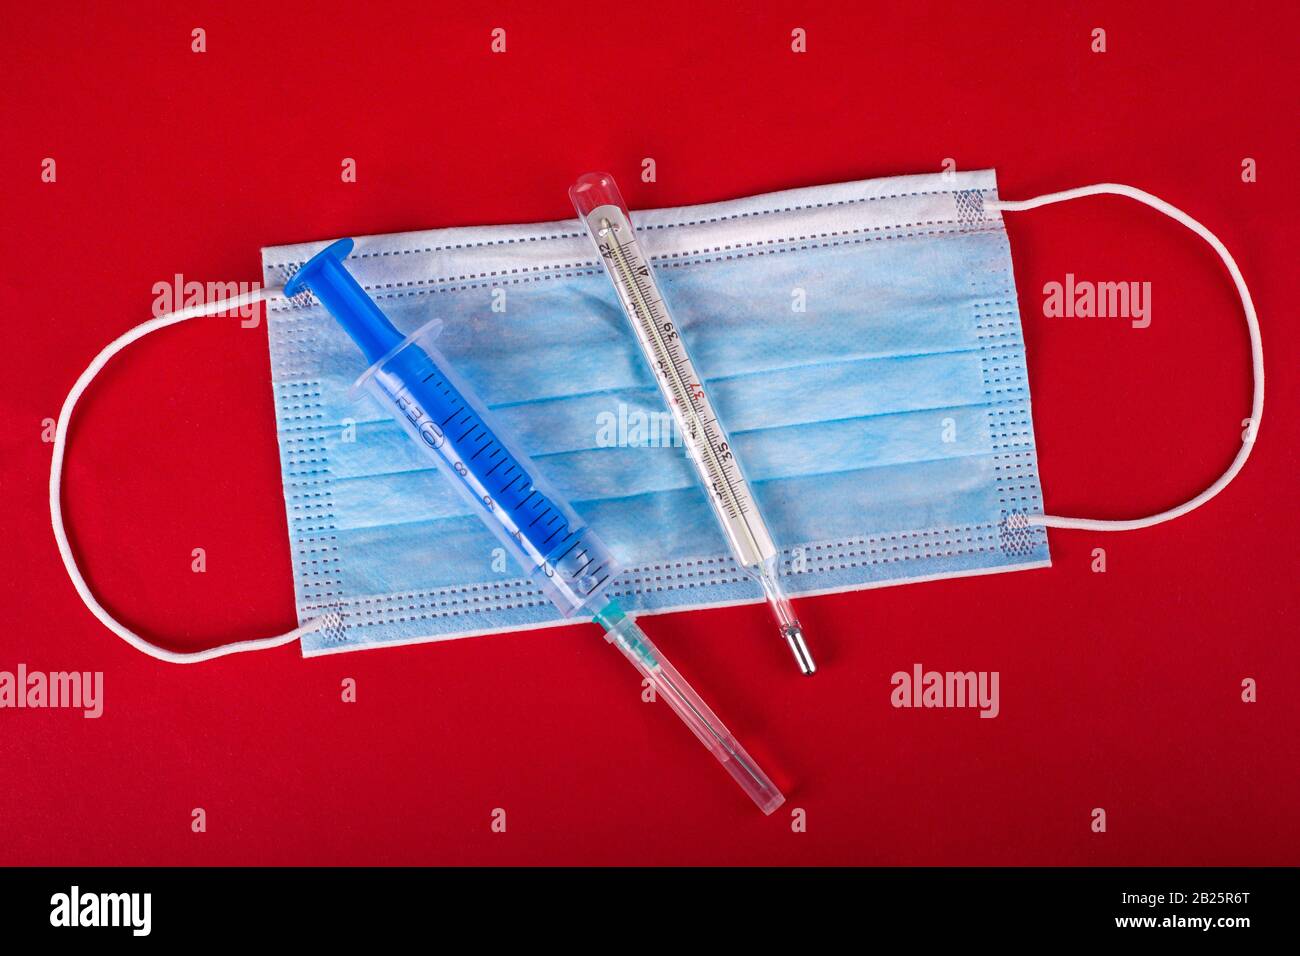 VORSICHTSMASSNAHMEN für die virale Infektion mit Coronavirus, Kovid-2019. Medizinisches Schutzmasken-Thermometer und Spritze mit einem Impfstoff auf rotem Hintergrund. Stockfoto